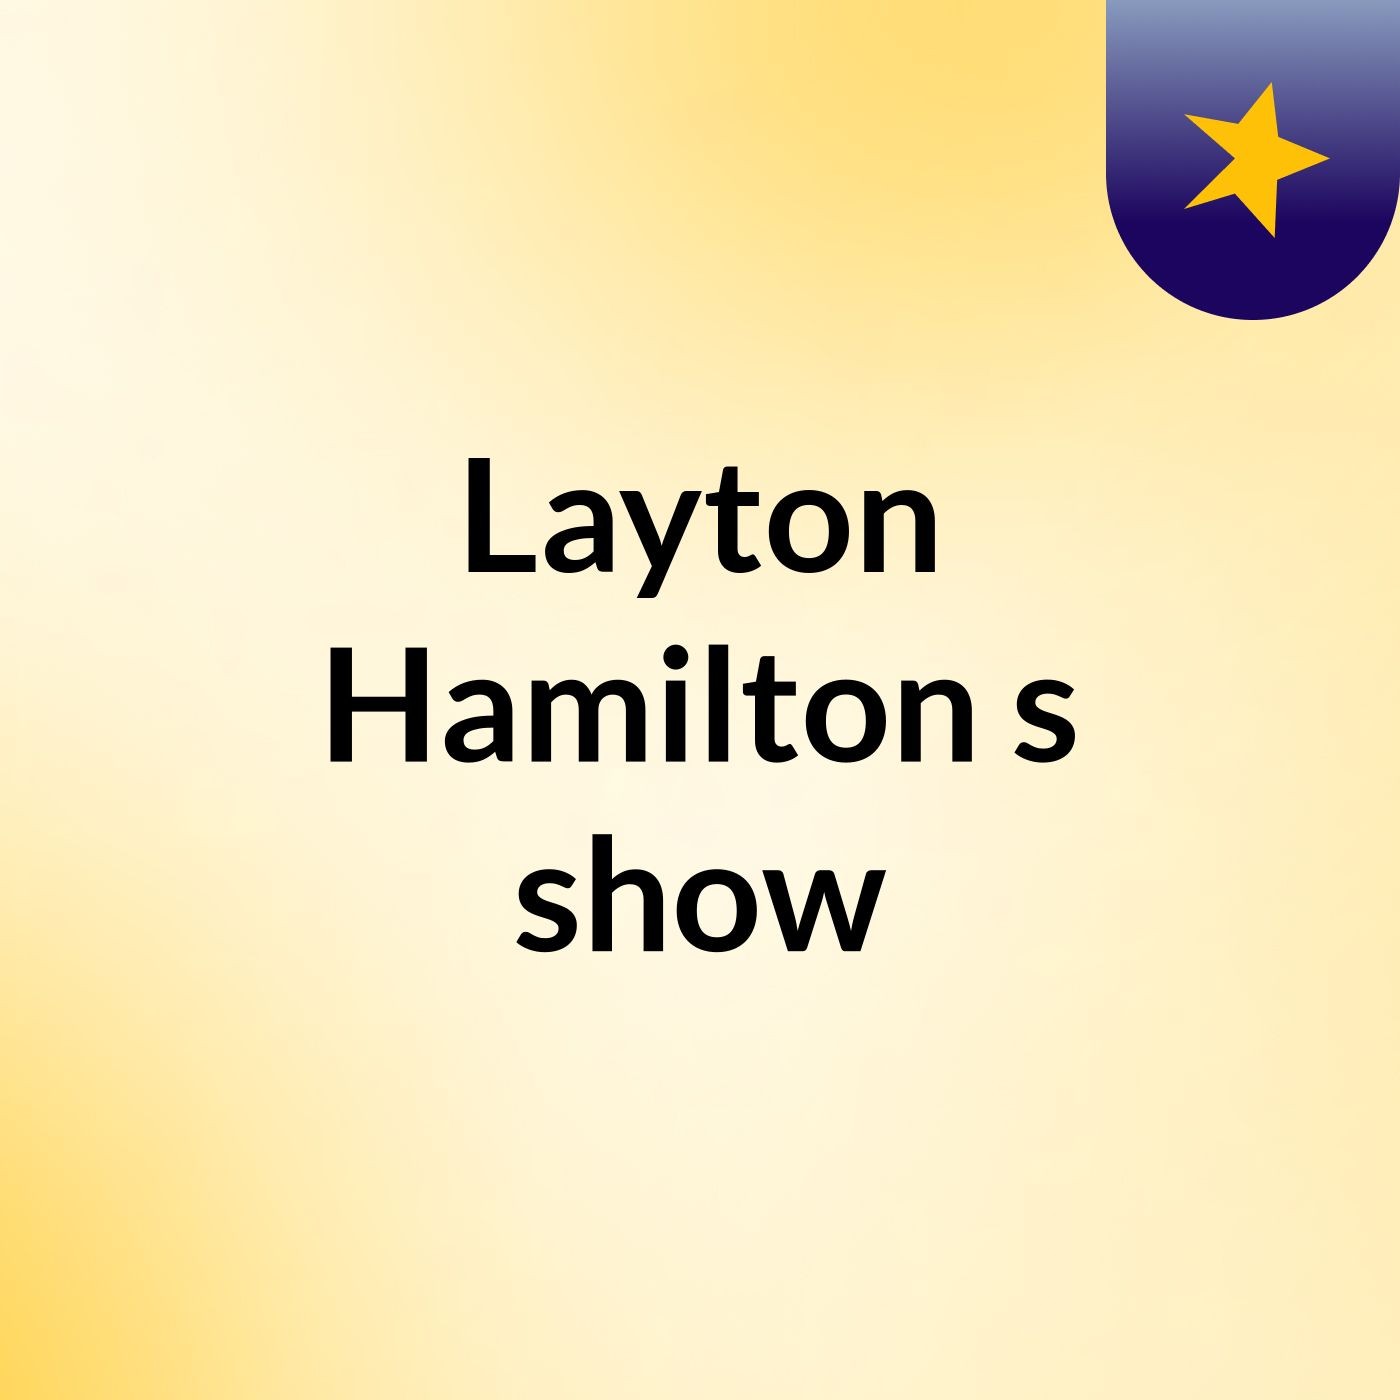 Episode 5 - Layton Hamilton's show